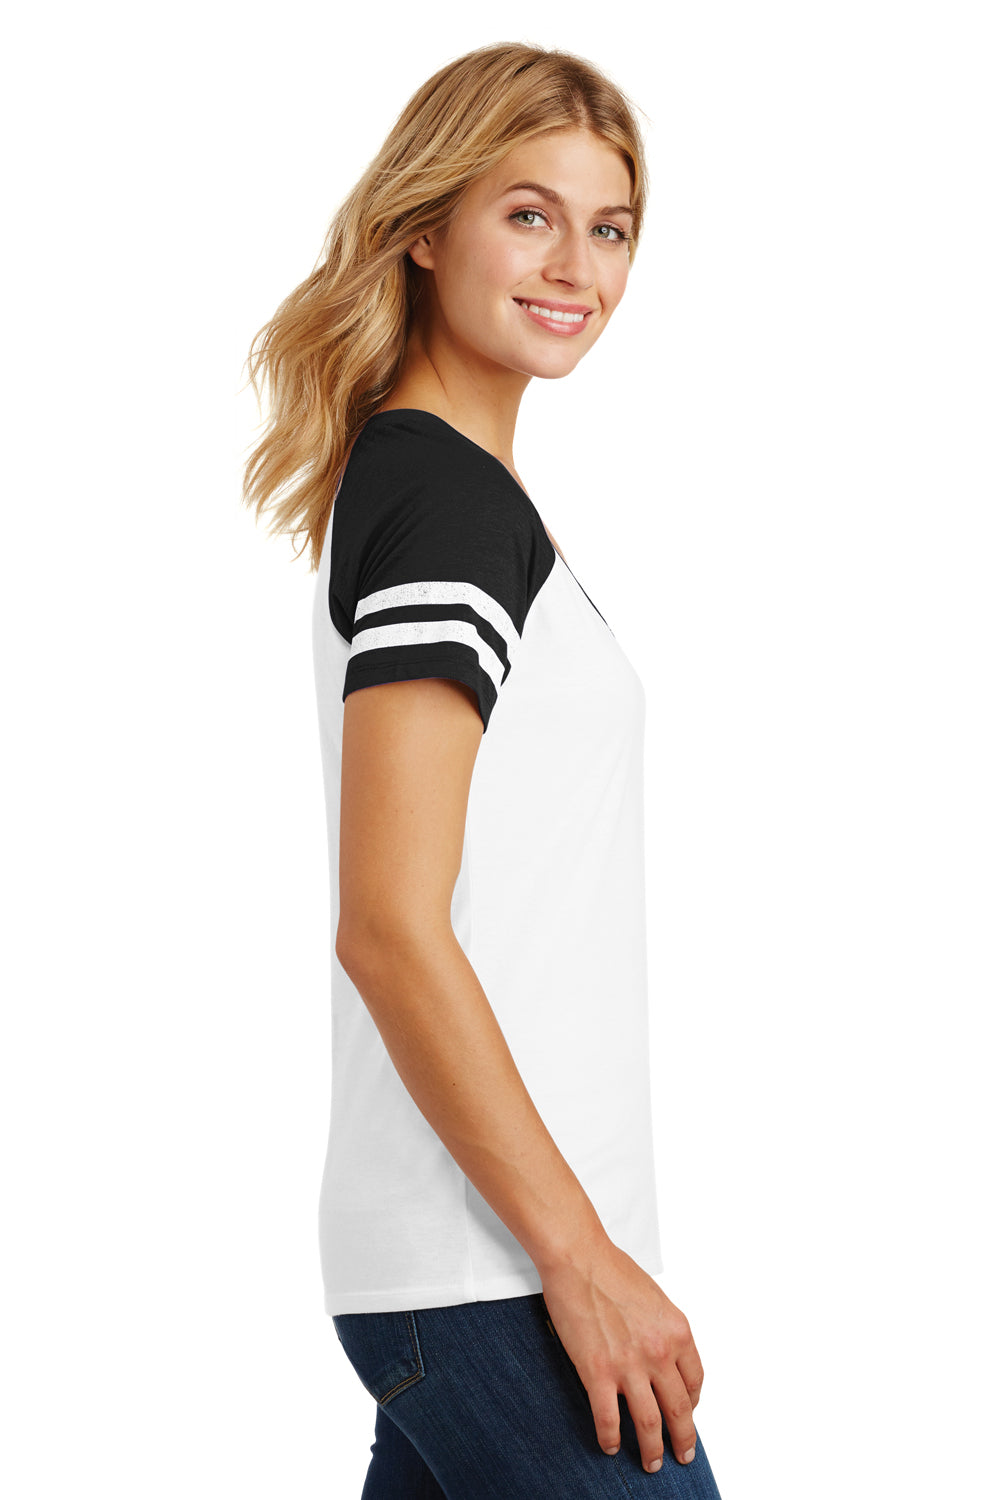 District DM476 Womens Game Short Sleeve V-Neck T-Shirt White/Black Side